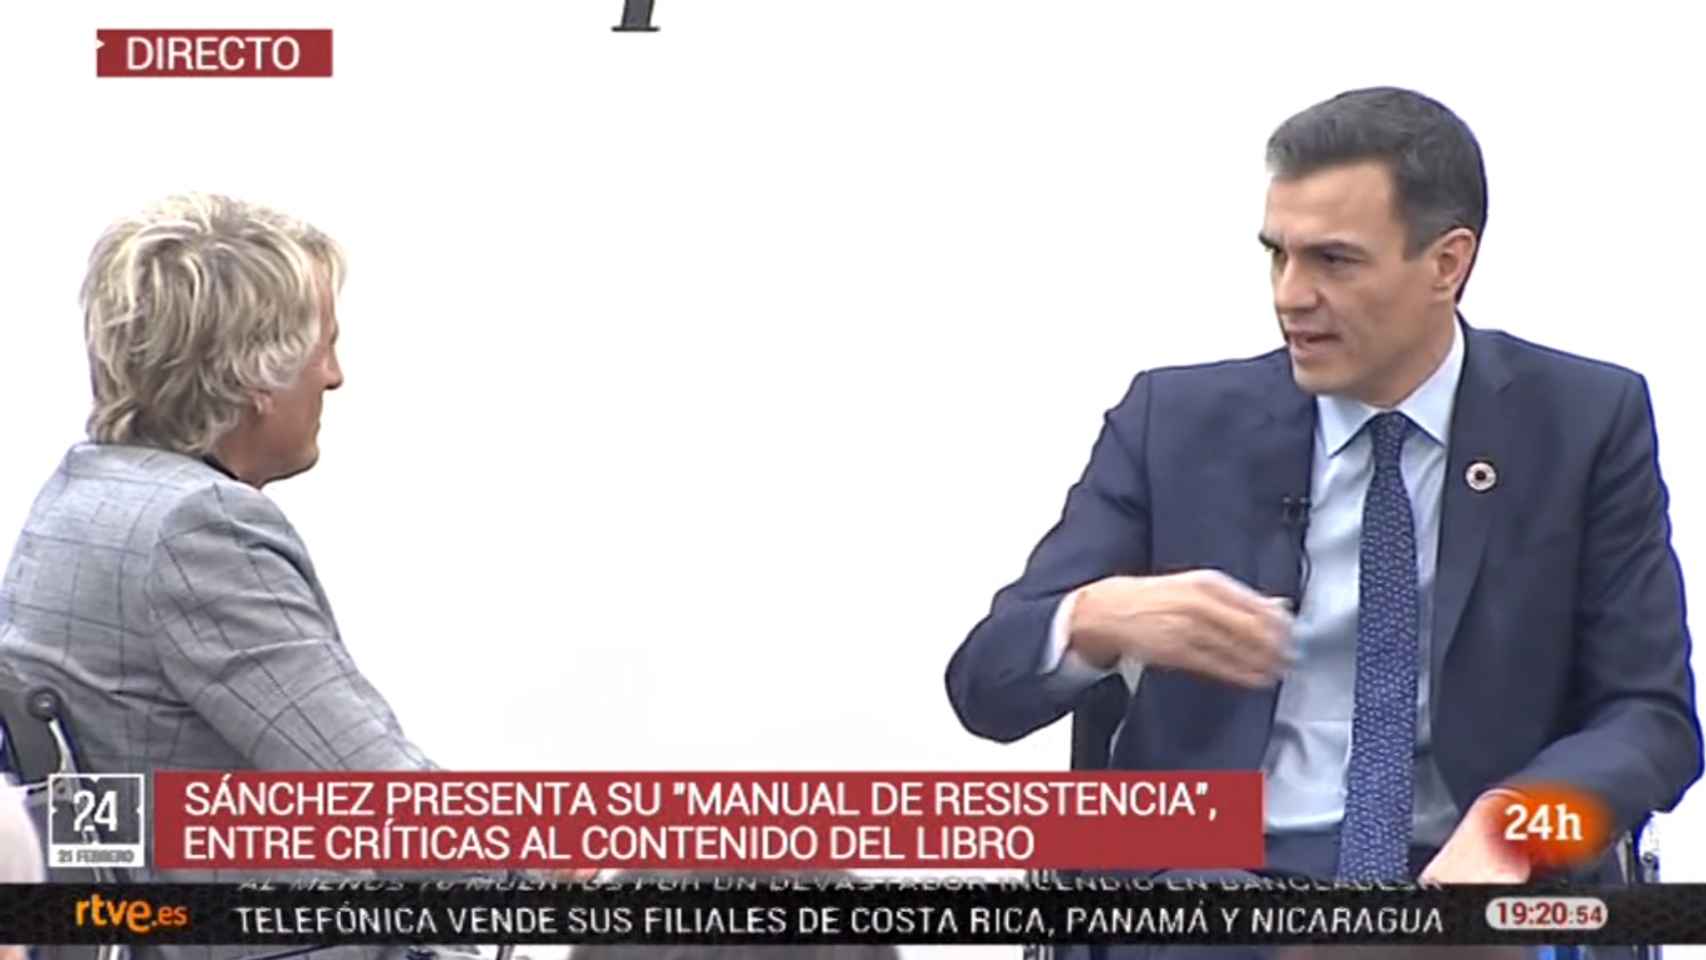 Imagen de la emisión del Canal 24 Horas de RTVE de la presentación del libro de Pedro Sánchez.